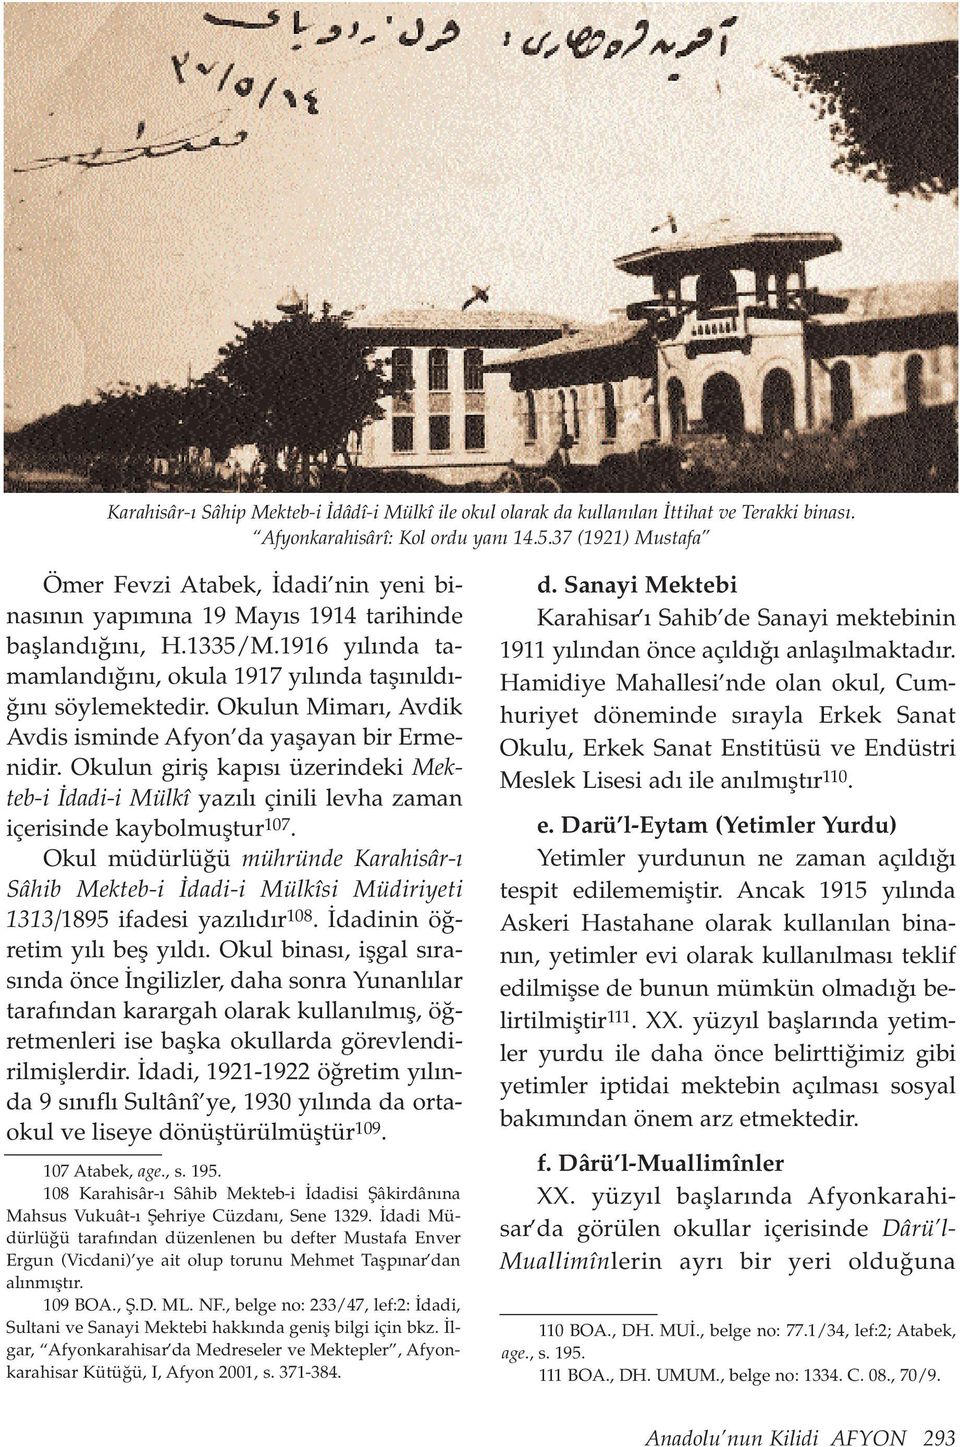 Okulun Mimar, Avdik Avdis isminde Afyon da yaflayan bir Ermenidir. Okulun girifl kap s üzerindeki Mekteb-i dadi-i Mülkî yaz l çinili levha zaman içerisinde kaybolmufltur 107.